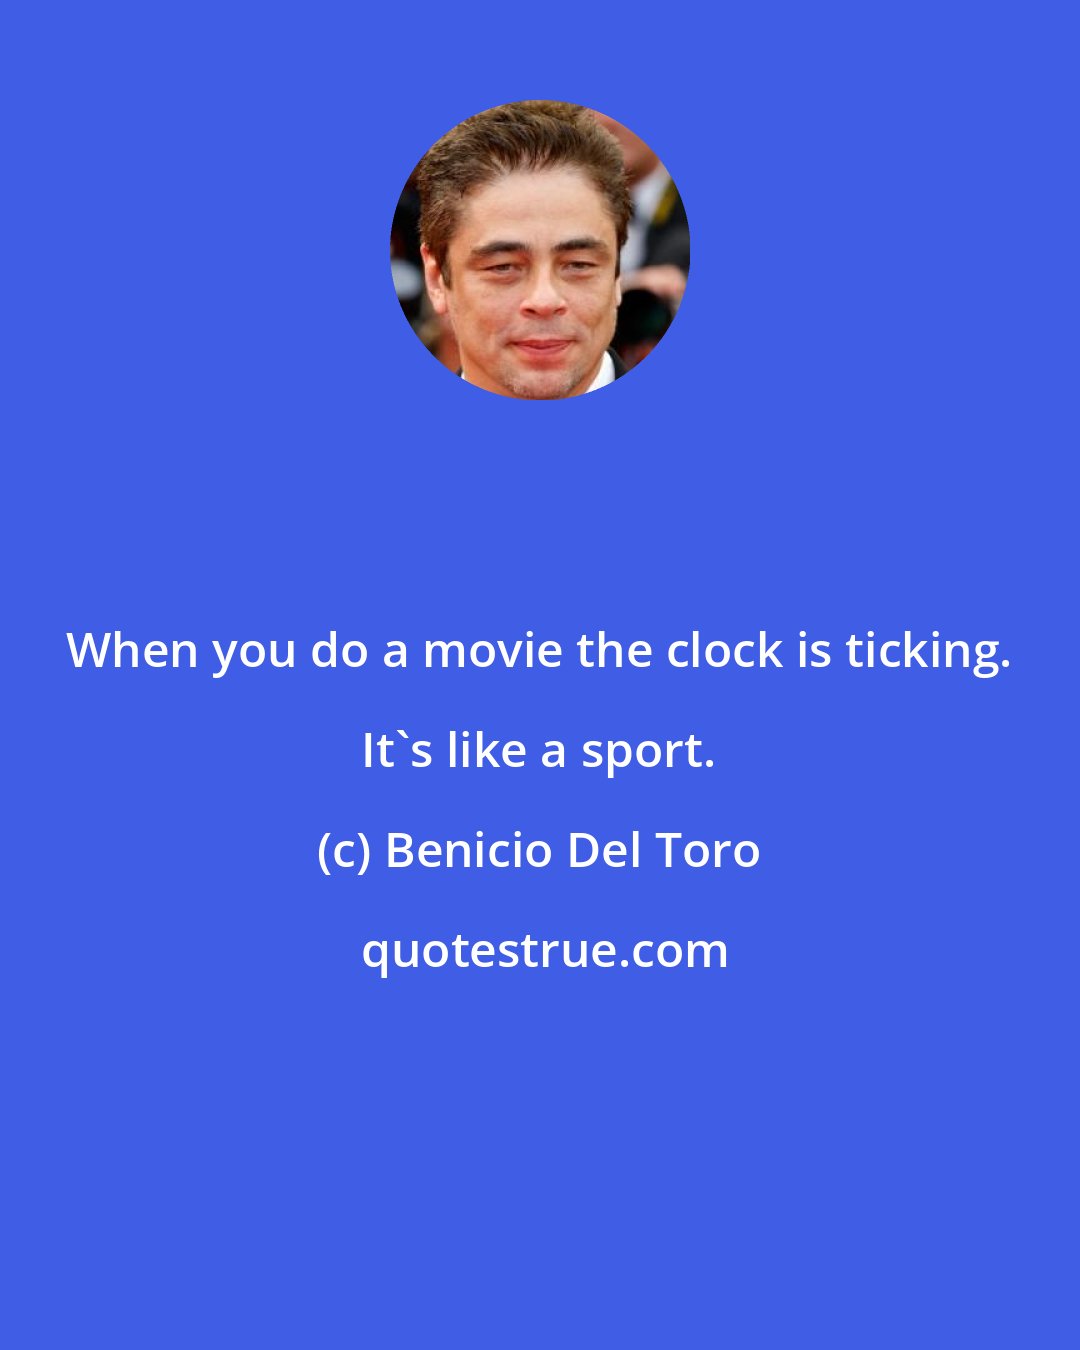 Benicio Del Toro: When you do a movie the clock is ticking. It's like a sport.